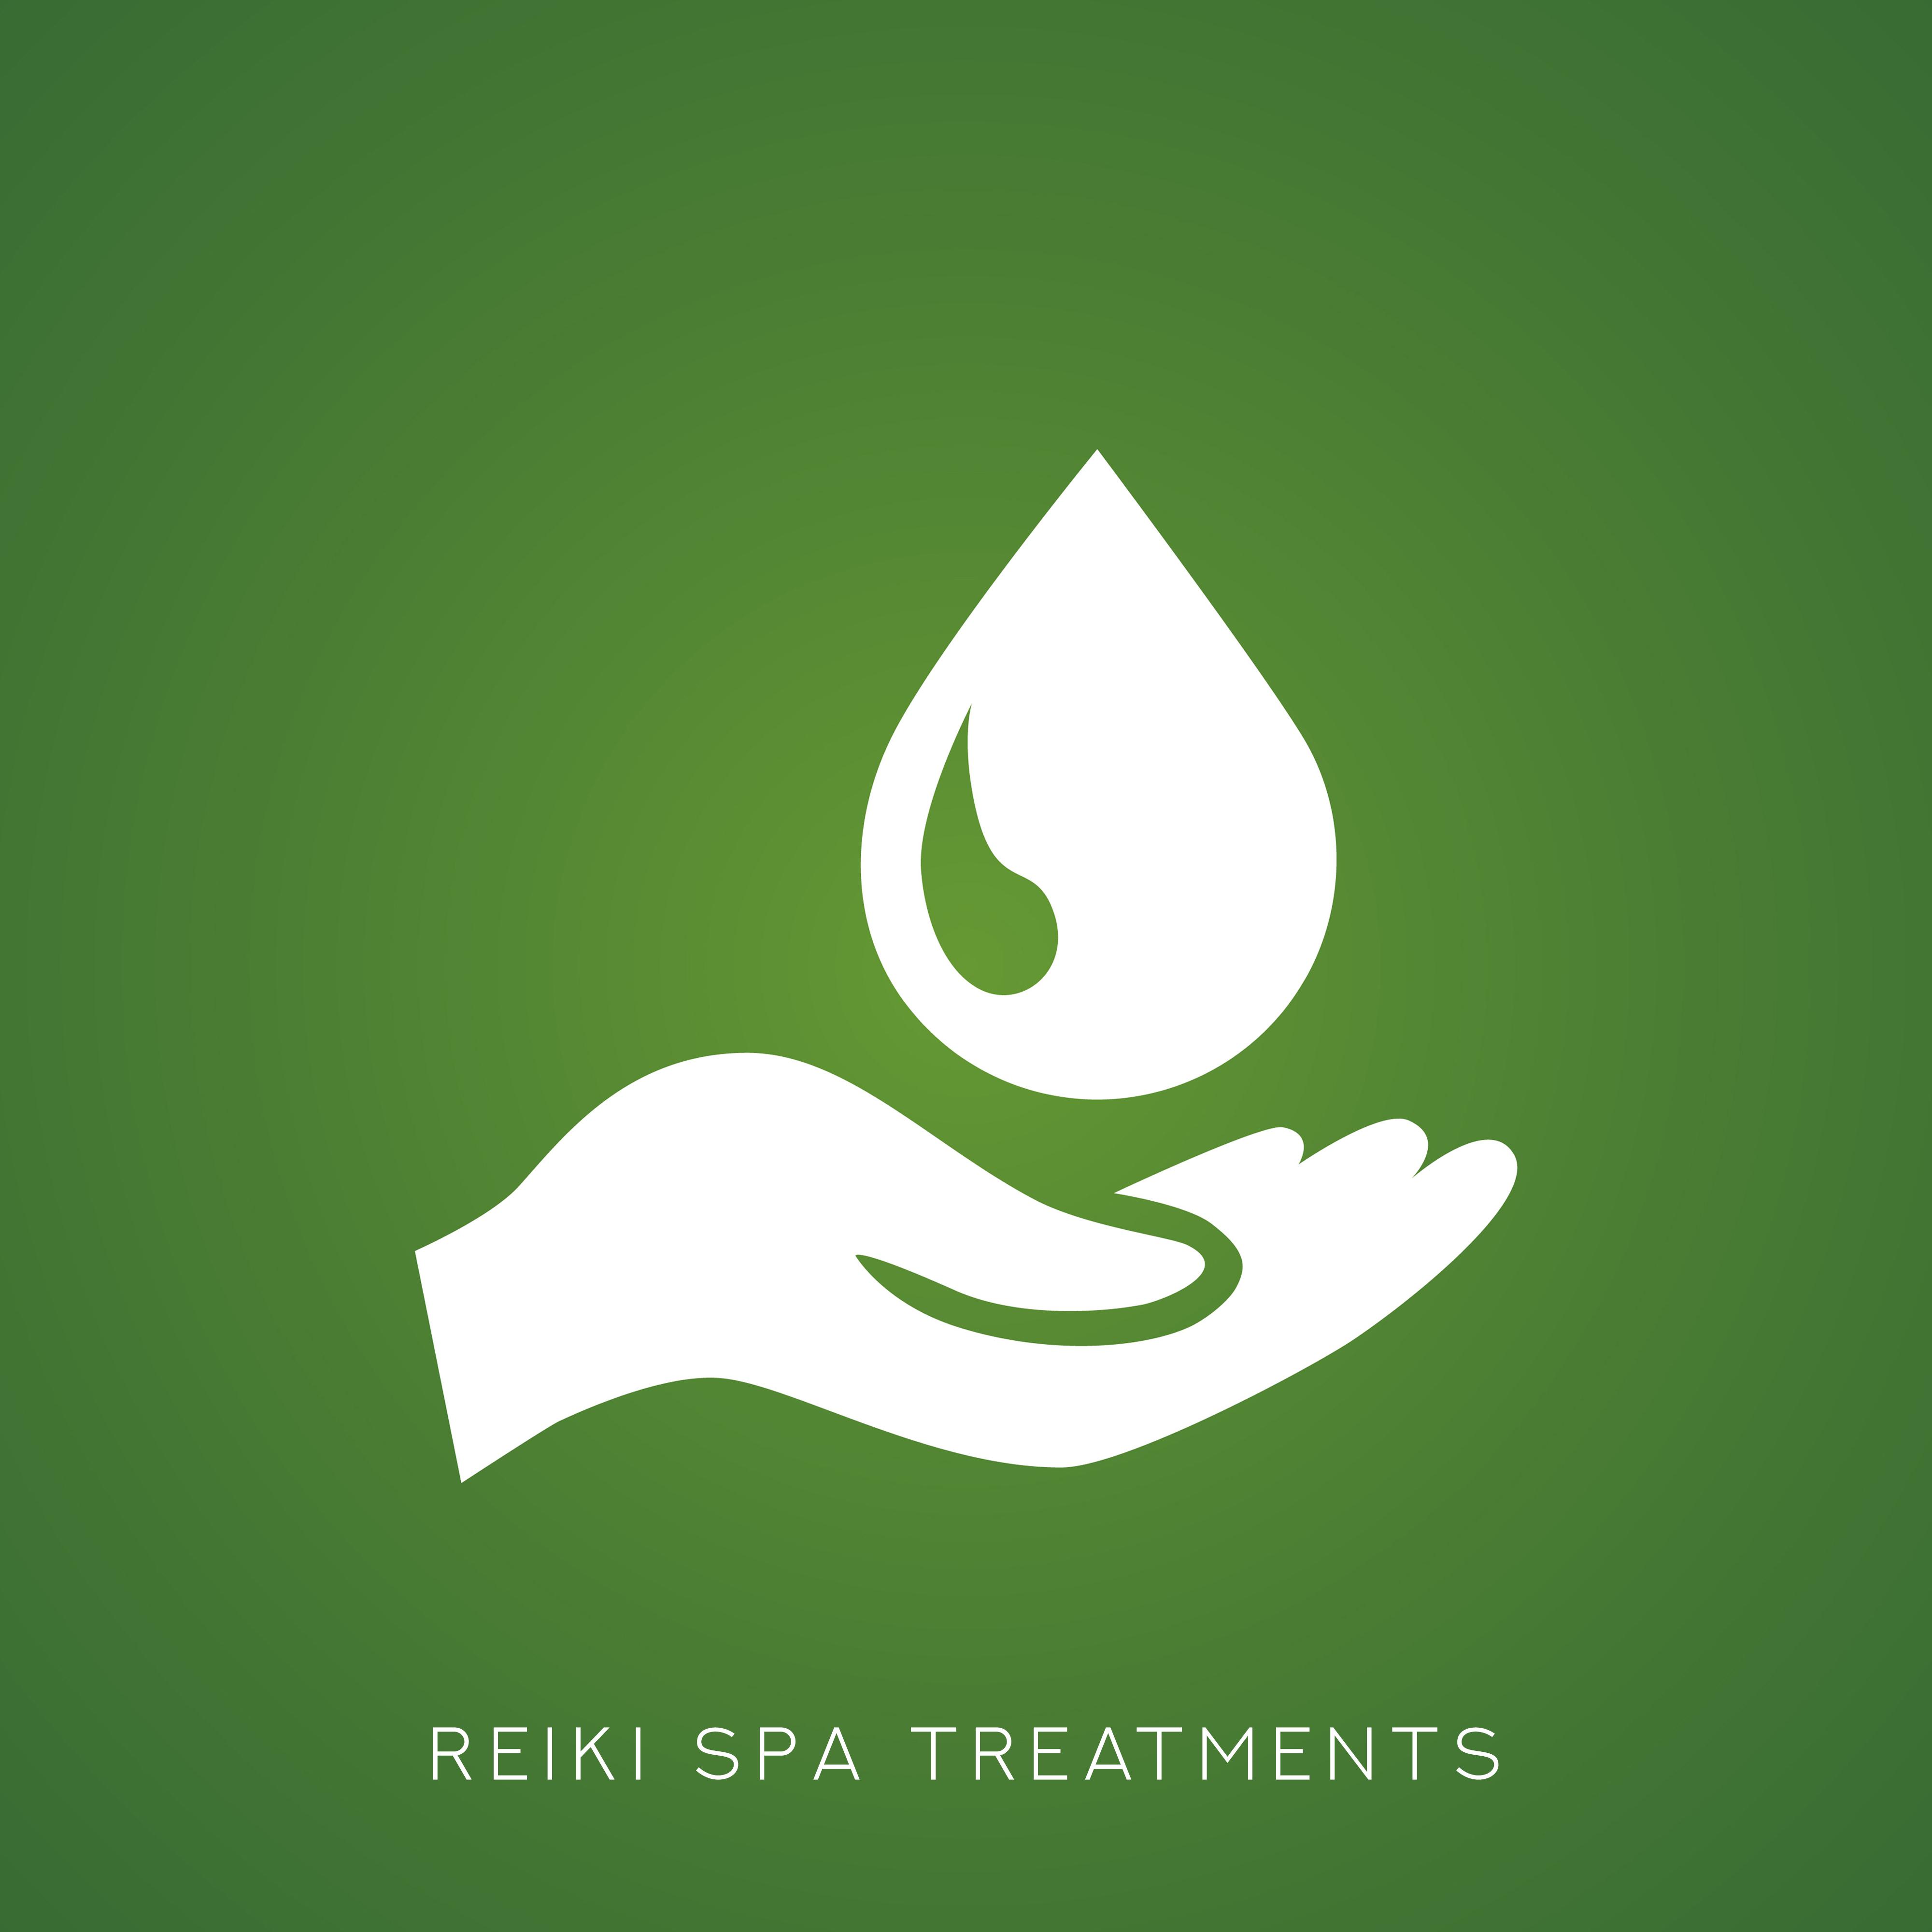 Reiki Spa Treatments